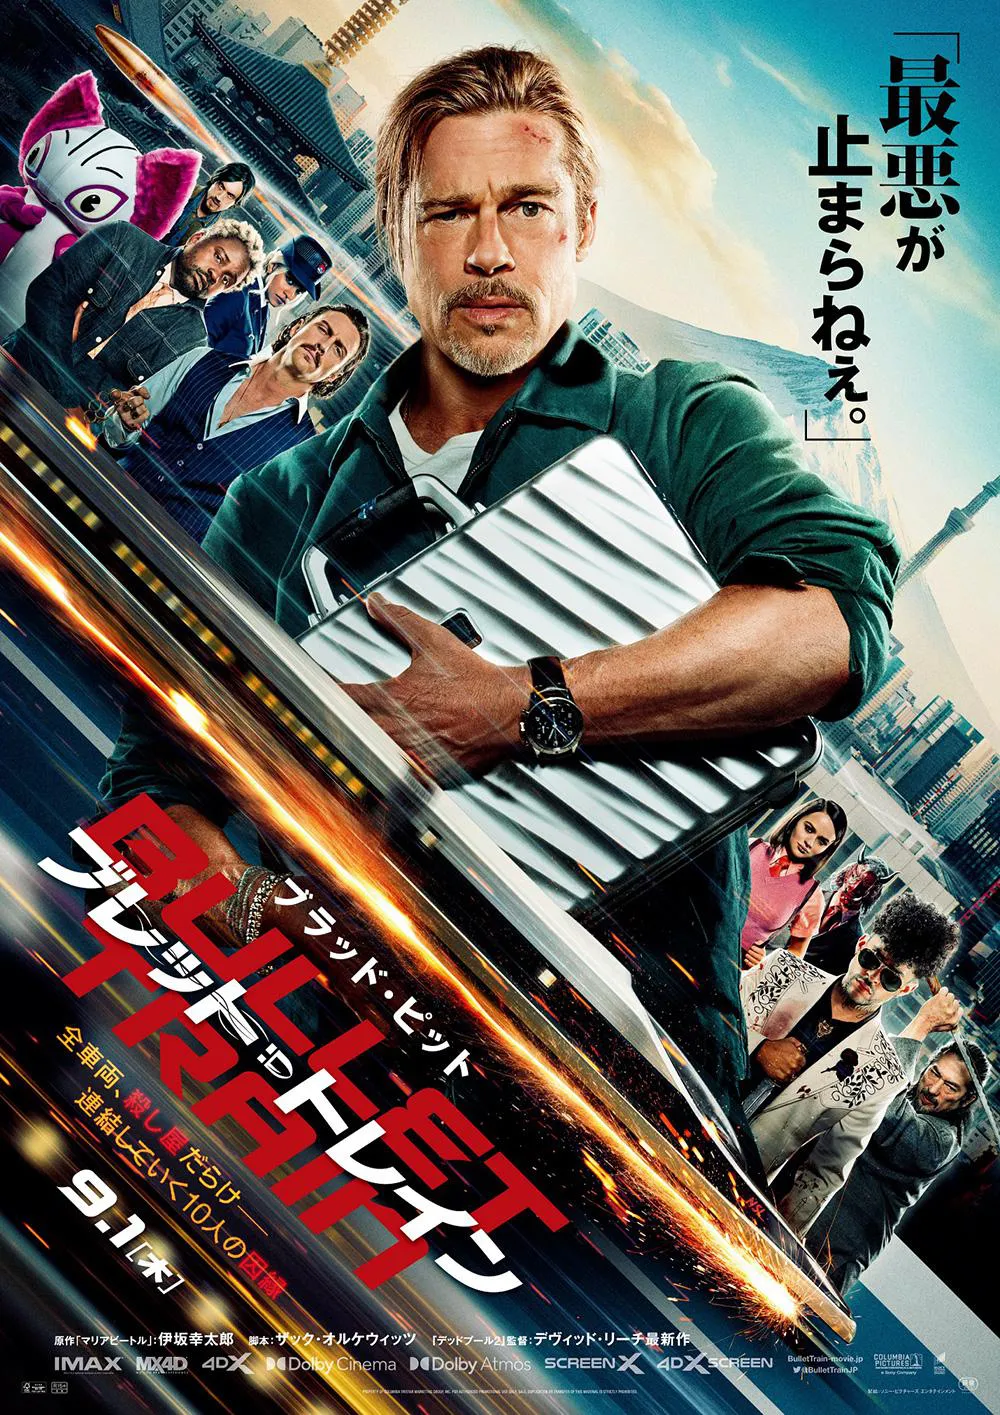 映画「ブレット・トレイン」は9月1日(木)から日本で劇場公開